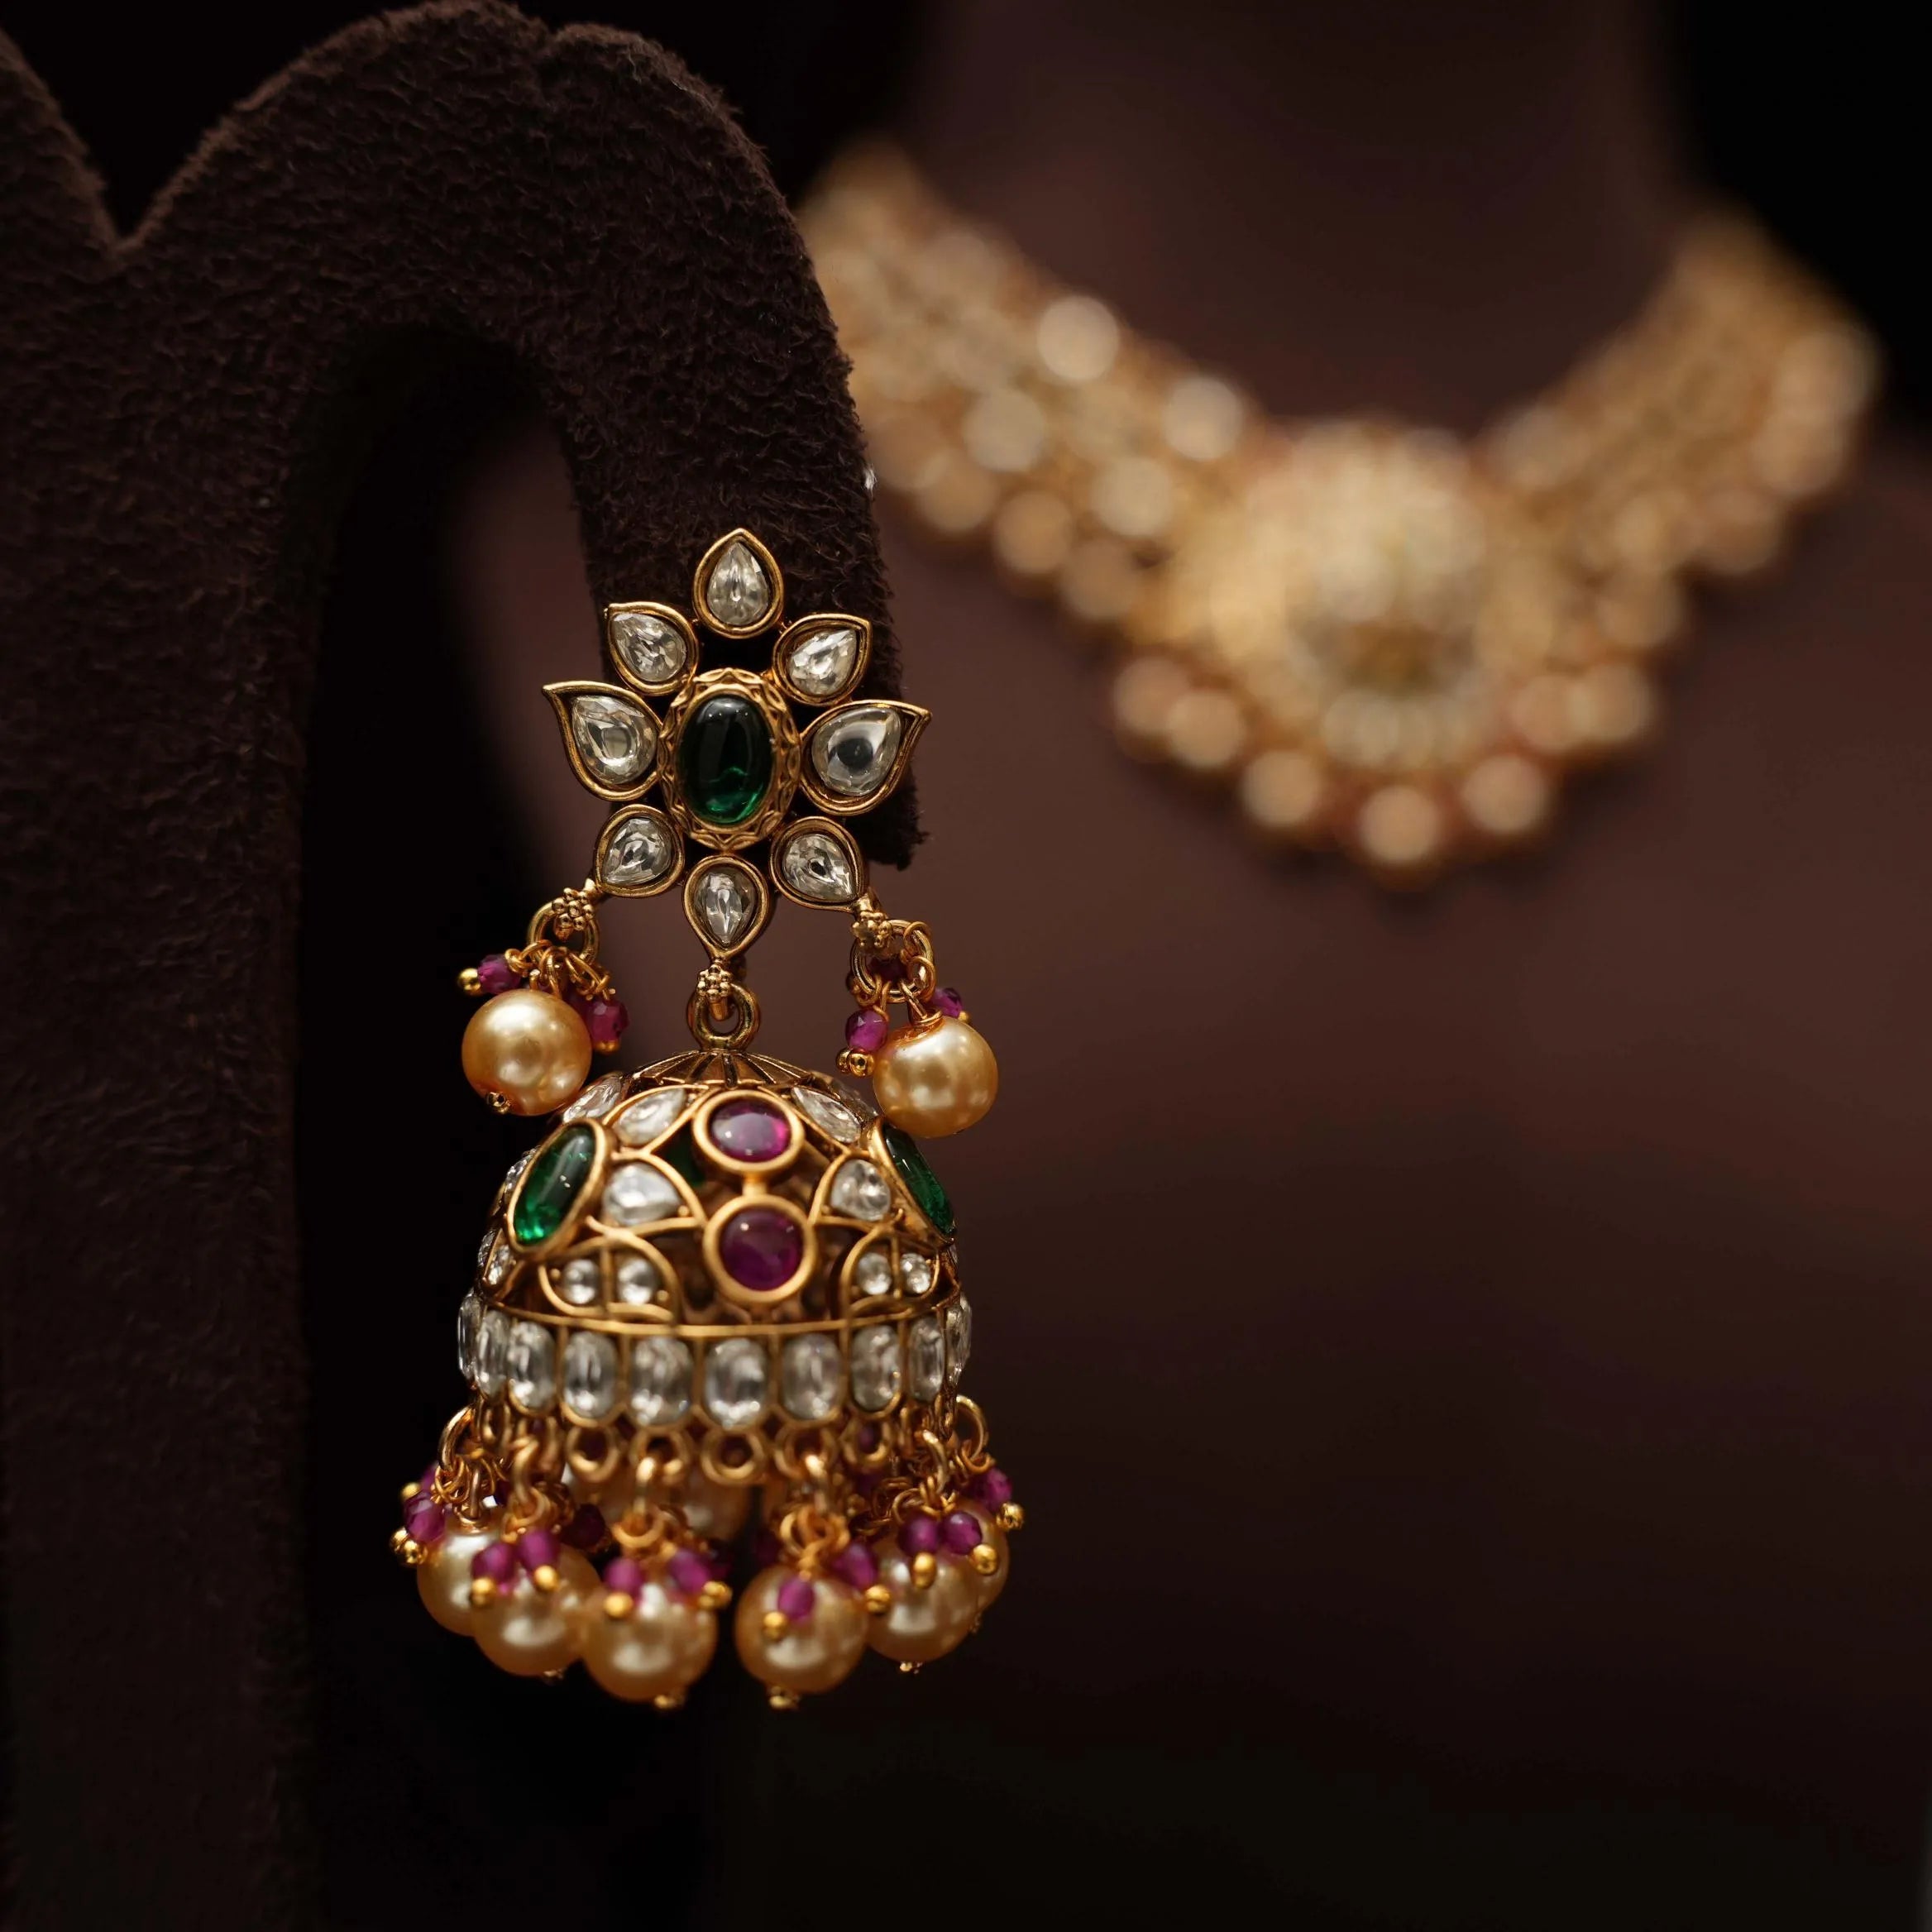 Teju Antique Necklace - Short